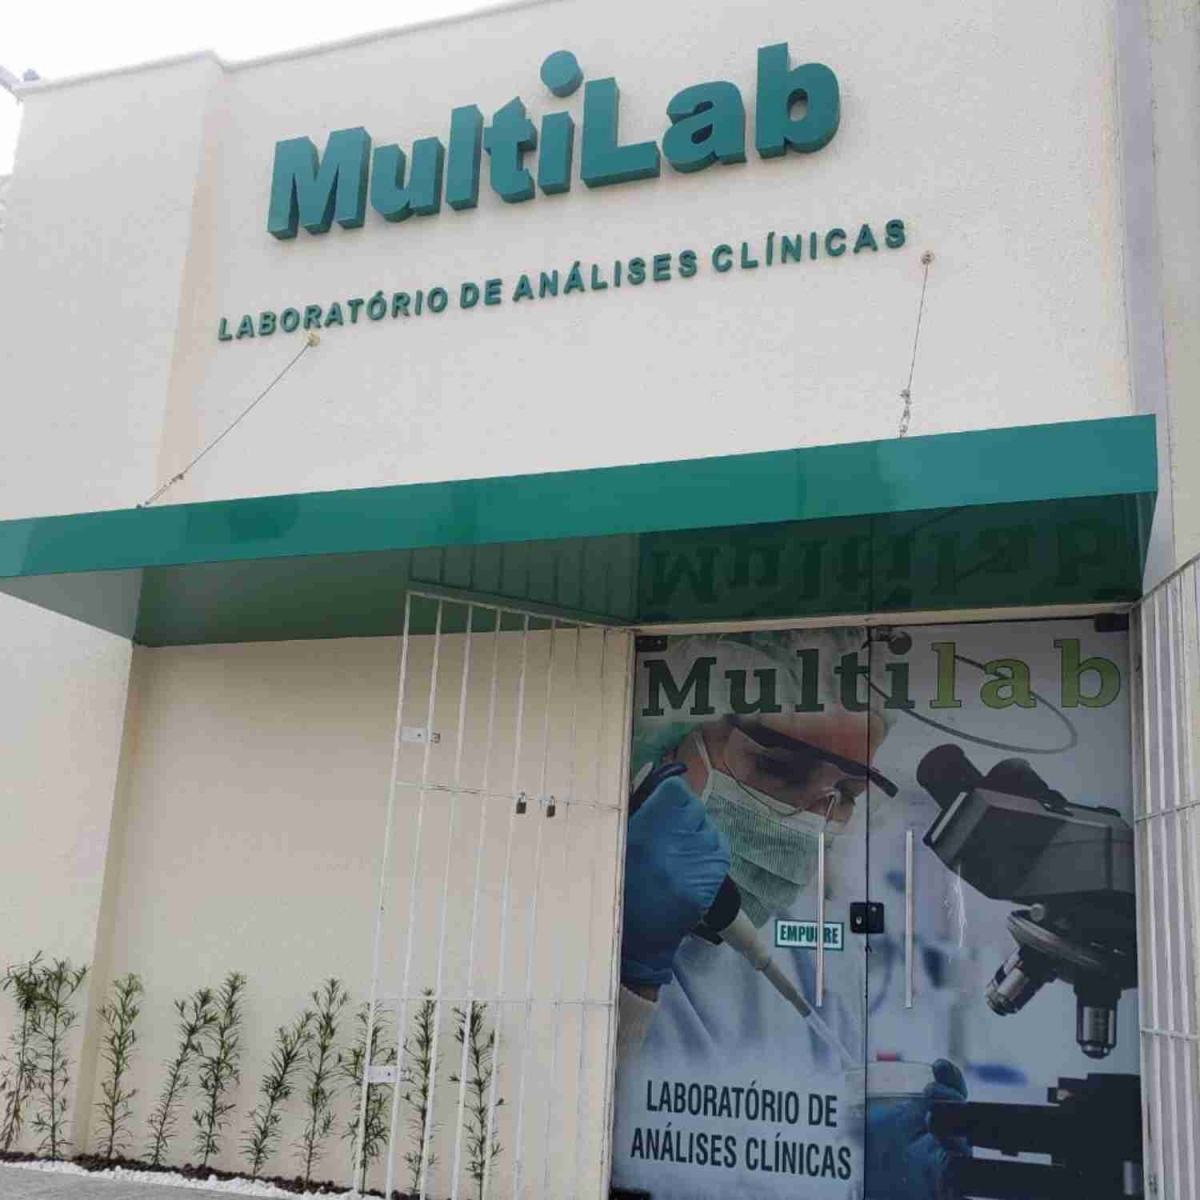 Multilab Laboratório de Análises Clínicas | Vive Pipa